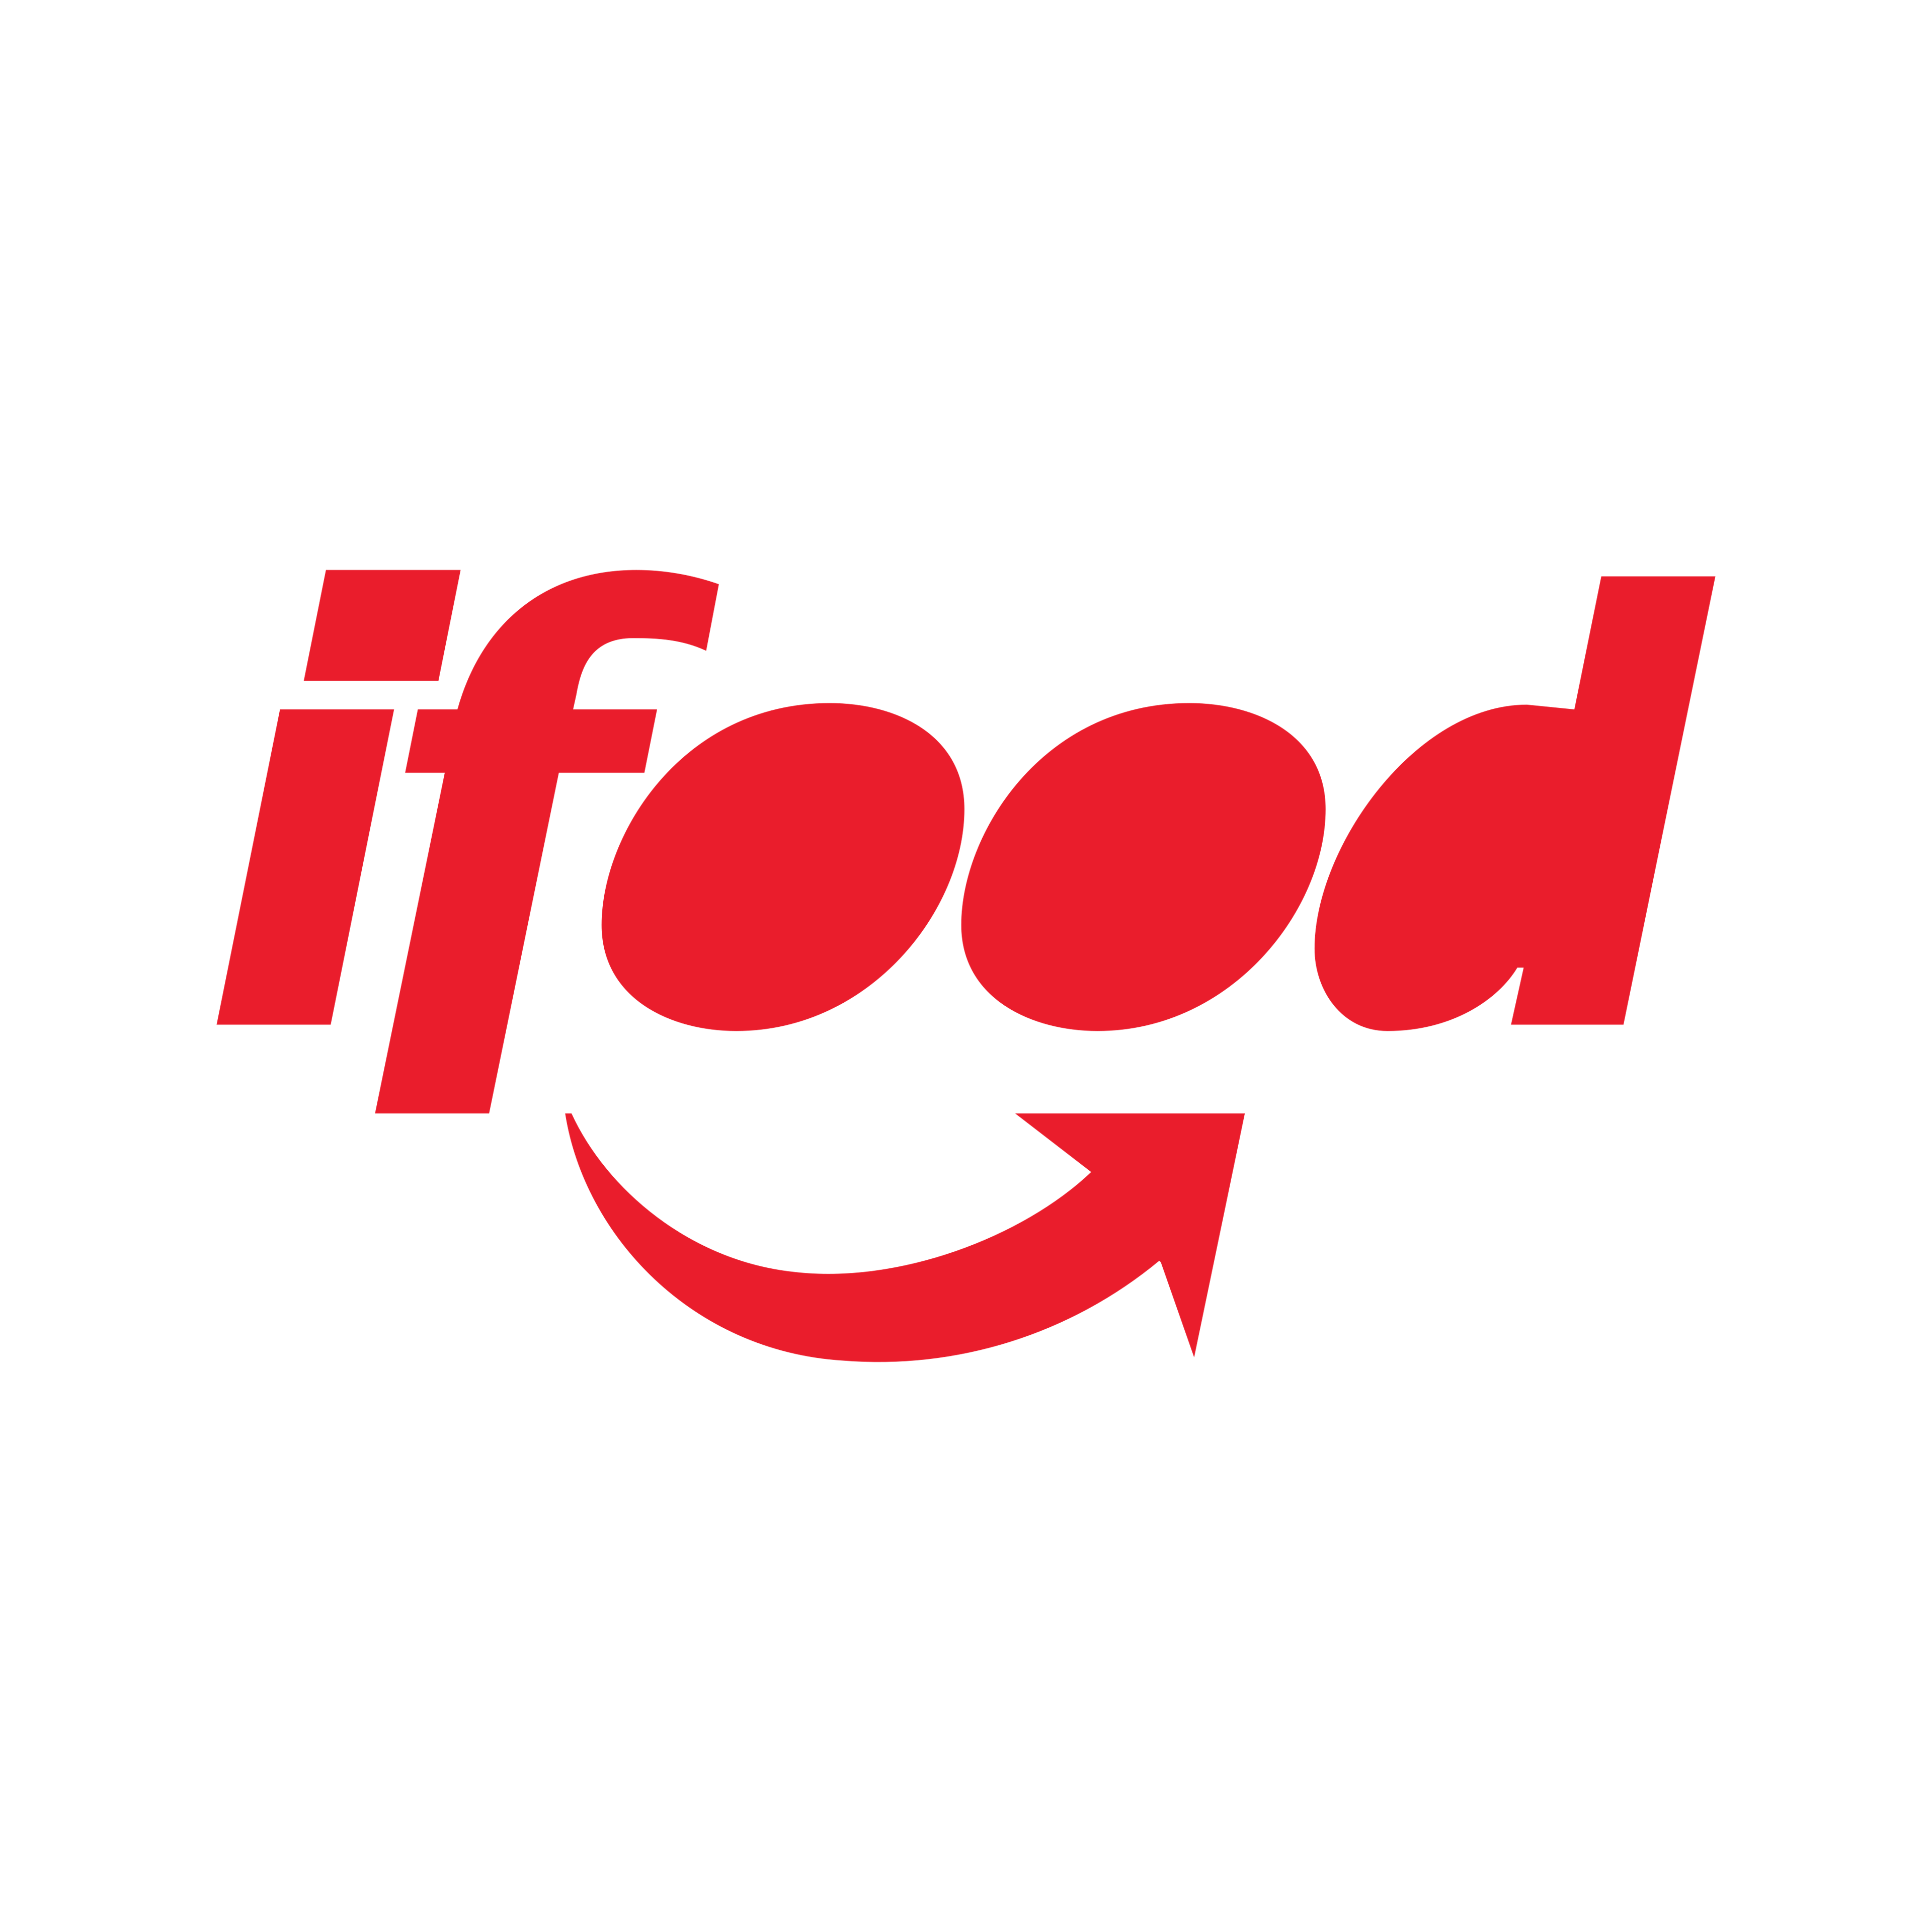 IFood Image Logo